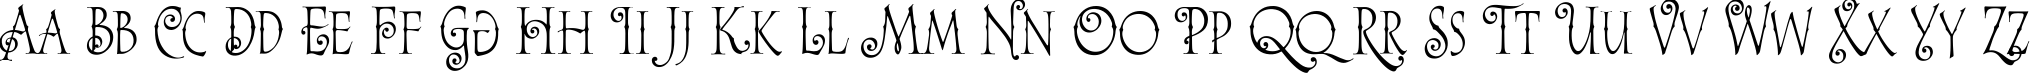 Пример написания английского алфавита шрифтом Alice